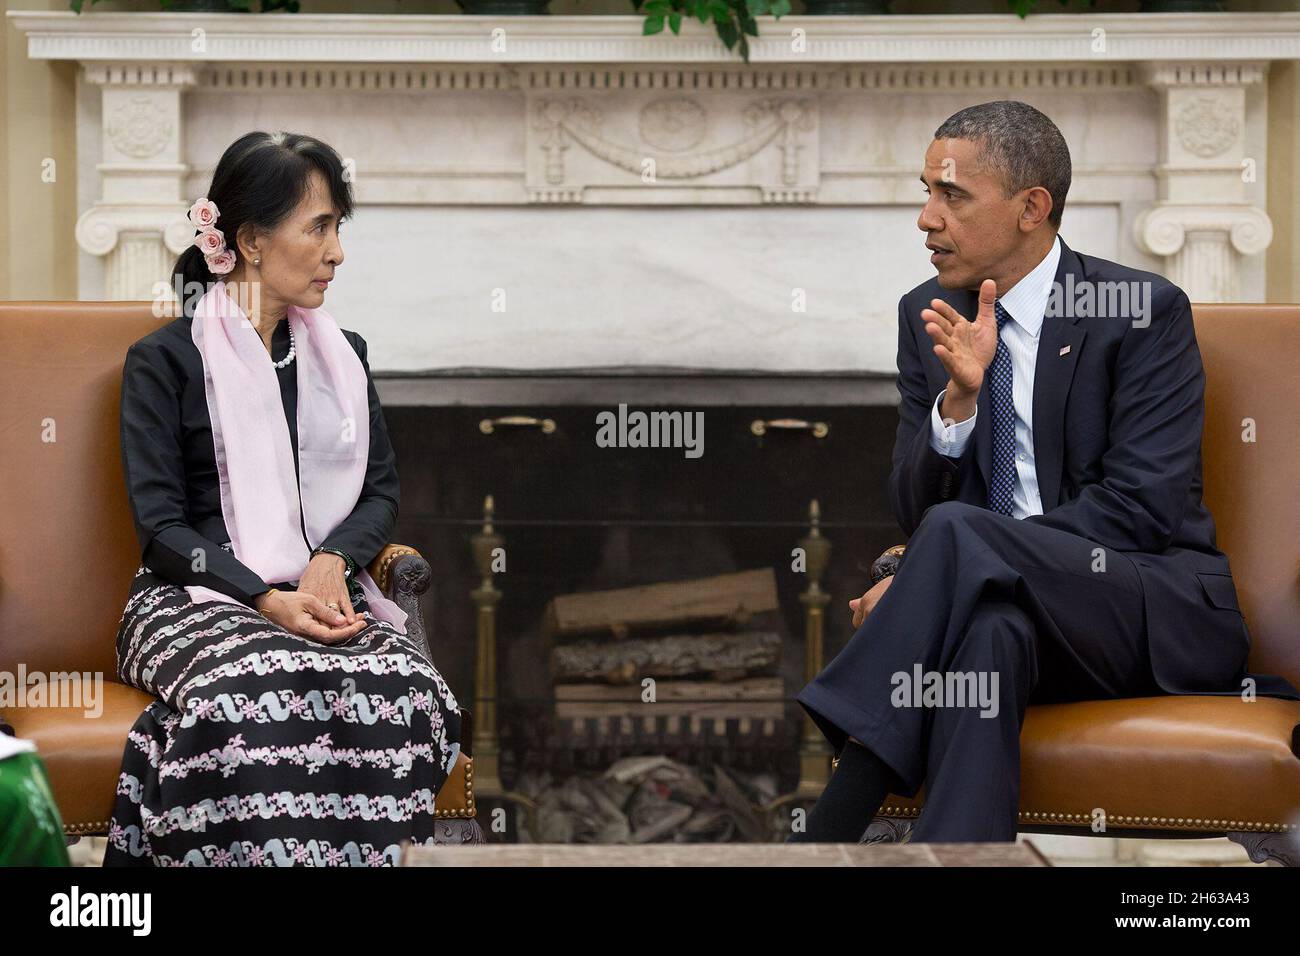 Il Presidente Barack Obama incontra il leader dell'opposizione birmana Aung San Suu Kyi, presso l'Ufficio ovale, 19 settembre 2012. Foto Stock